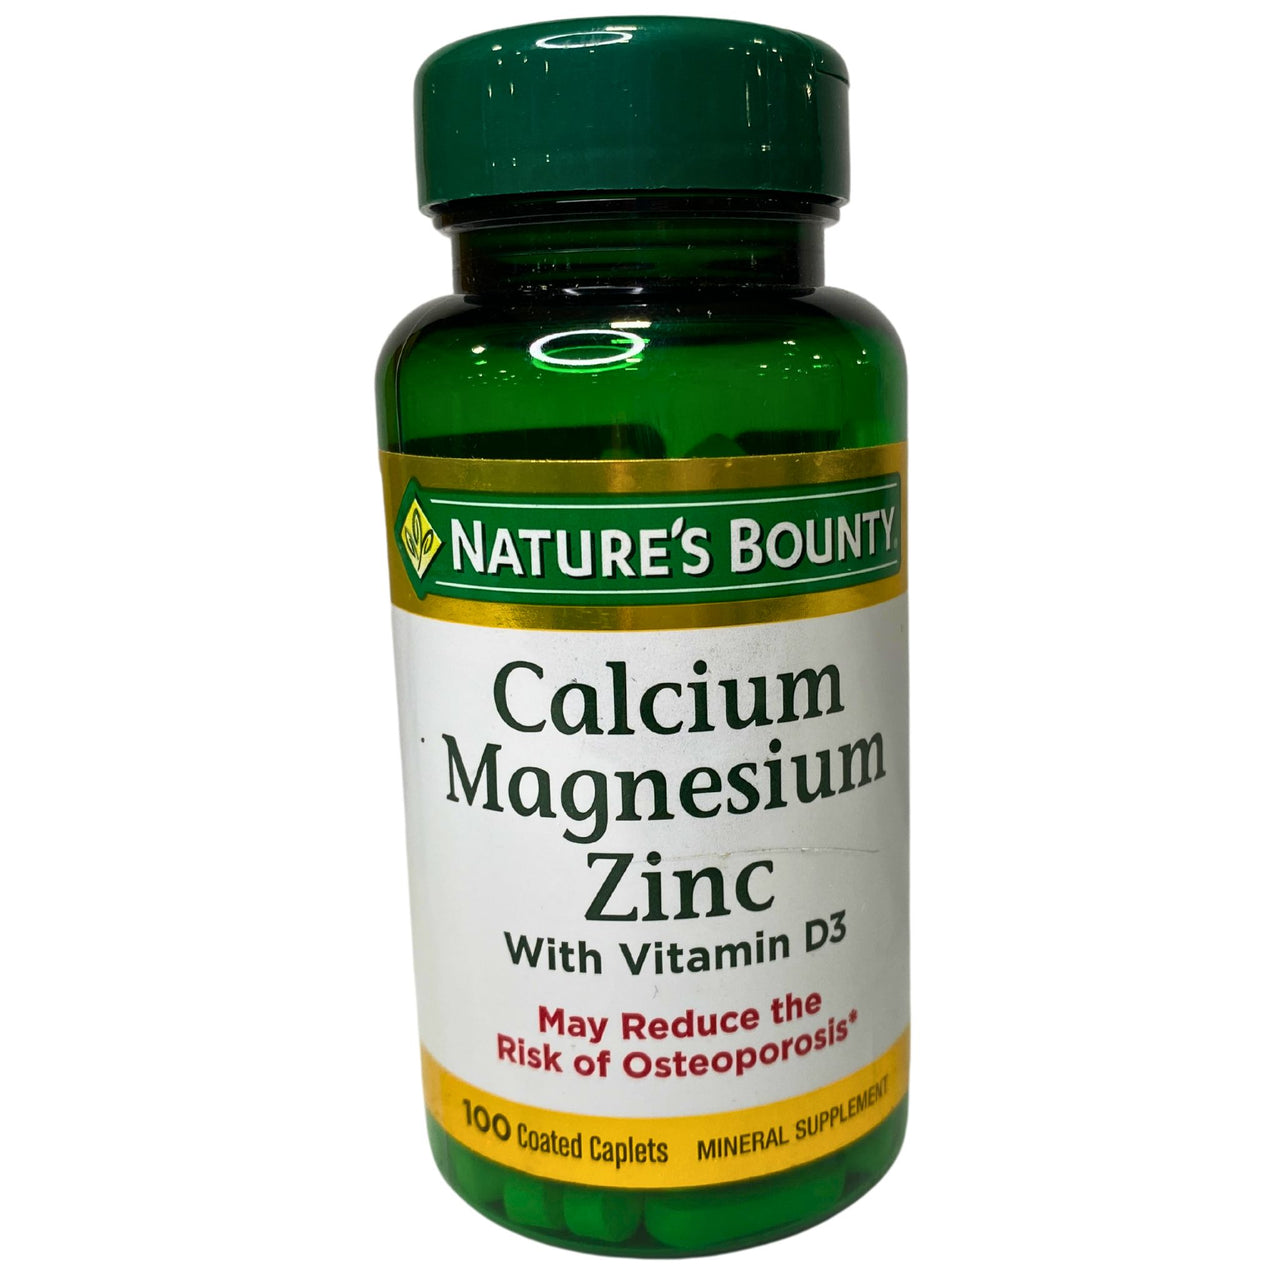 Calcium Magnesium Zinc with Vitamin D3 